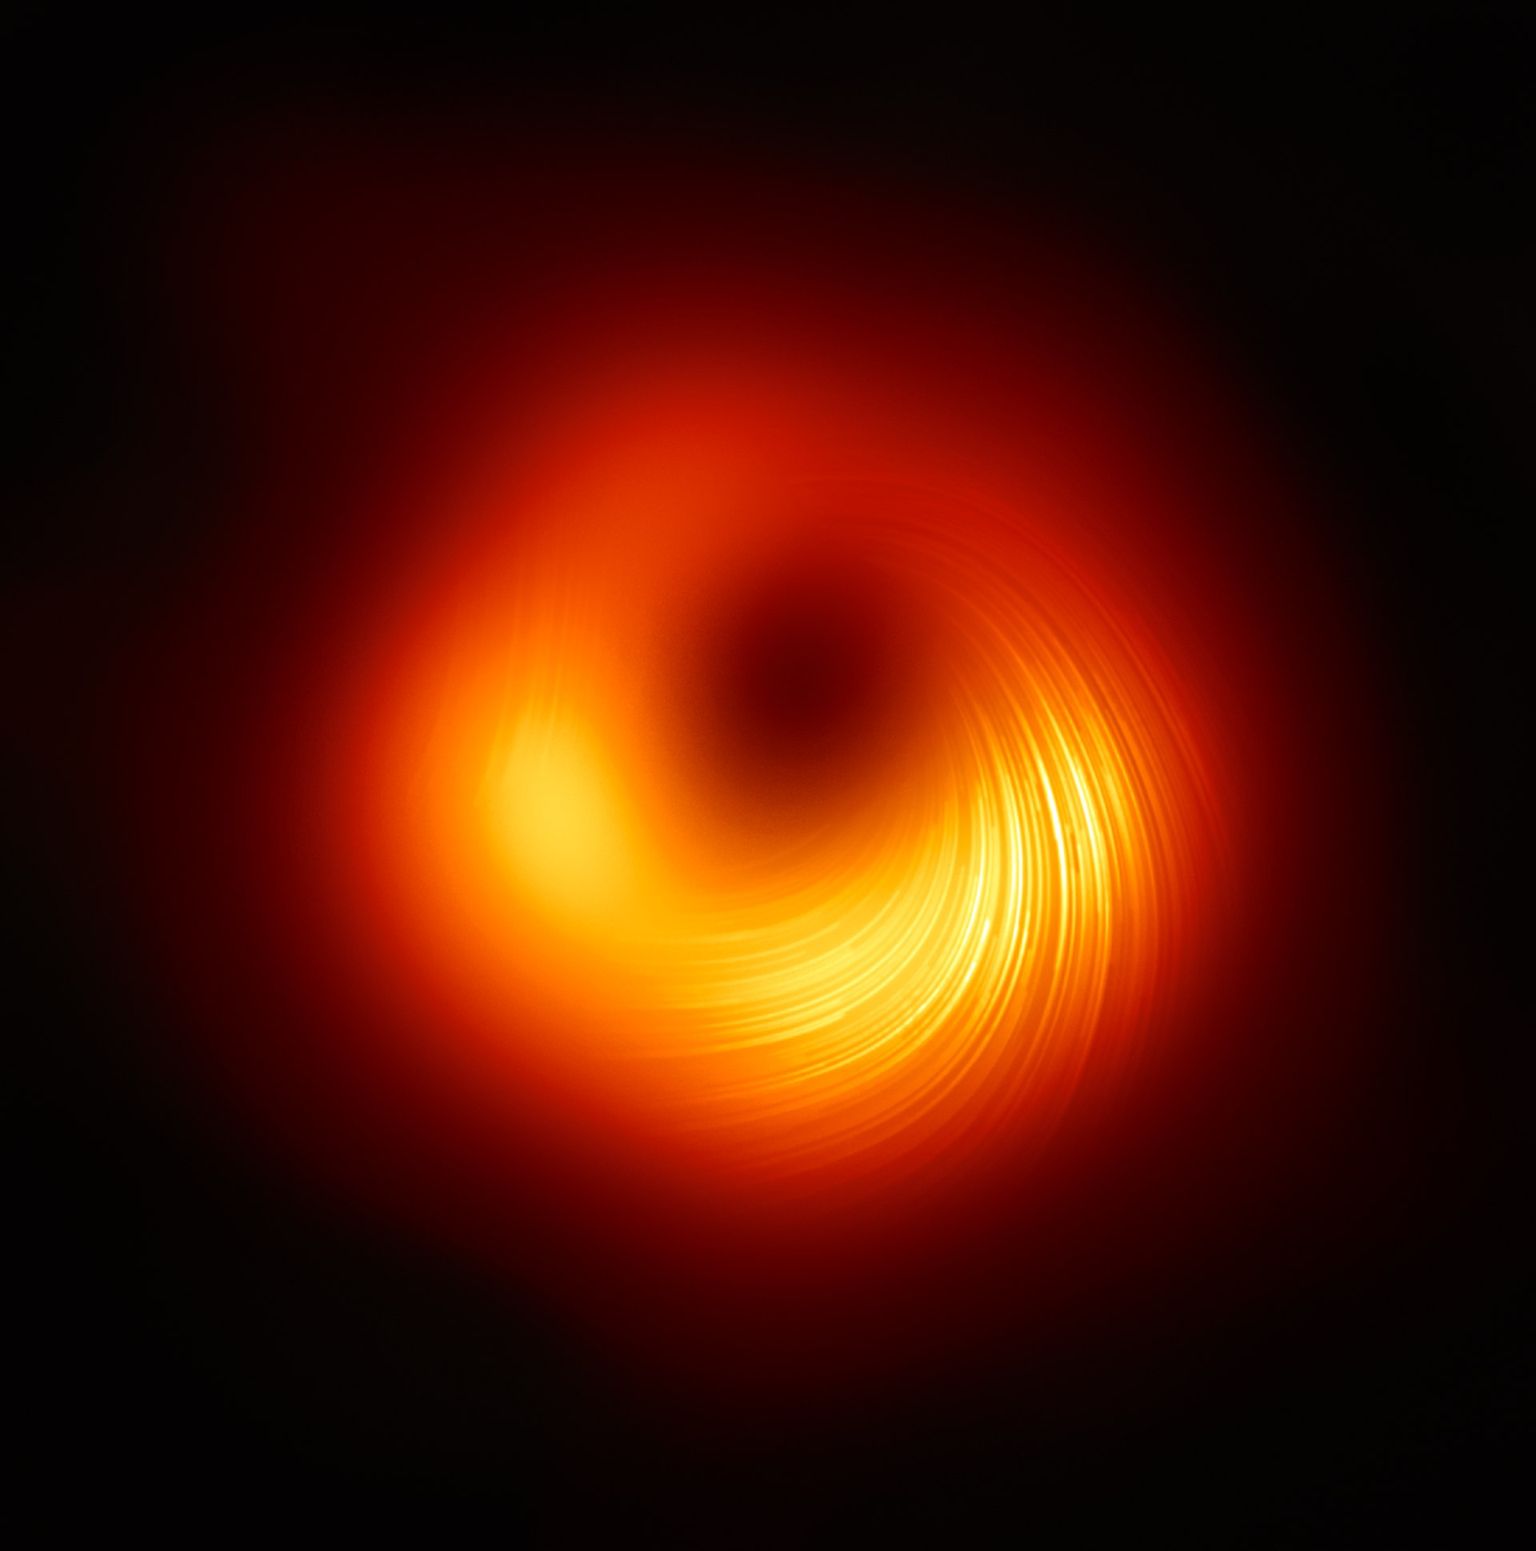 Supermassiivne must auk M87 on inimese pikkusest 5 miljardit triljonit korda suurema läbimõõduga (980 000 valgusaastat) ja paikneb meist 5,9 miljoni valgusaasta kaugusel.